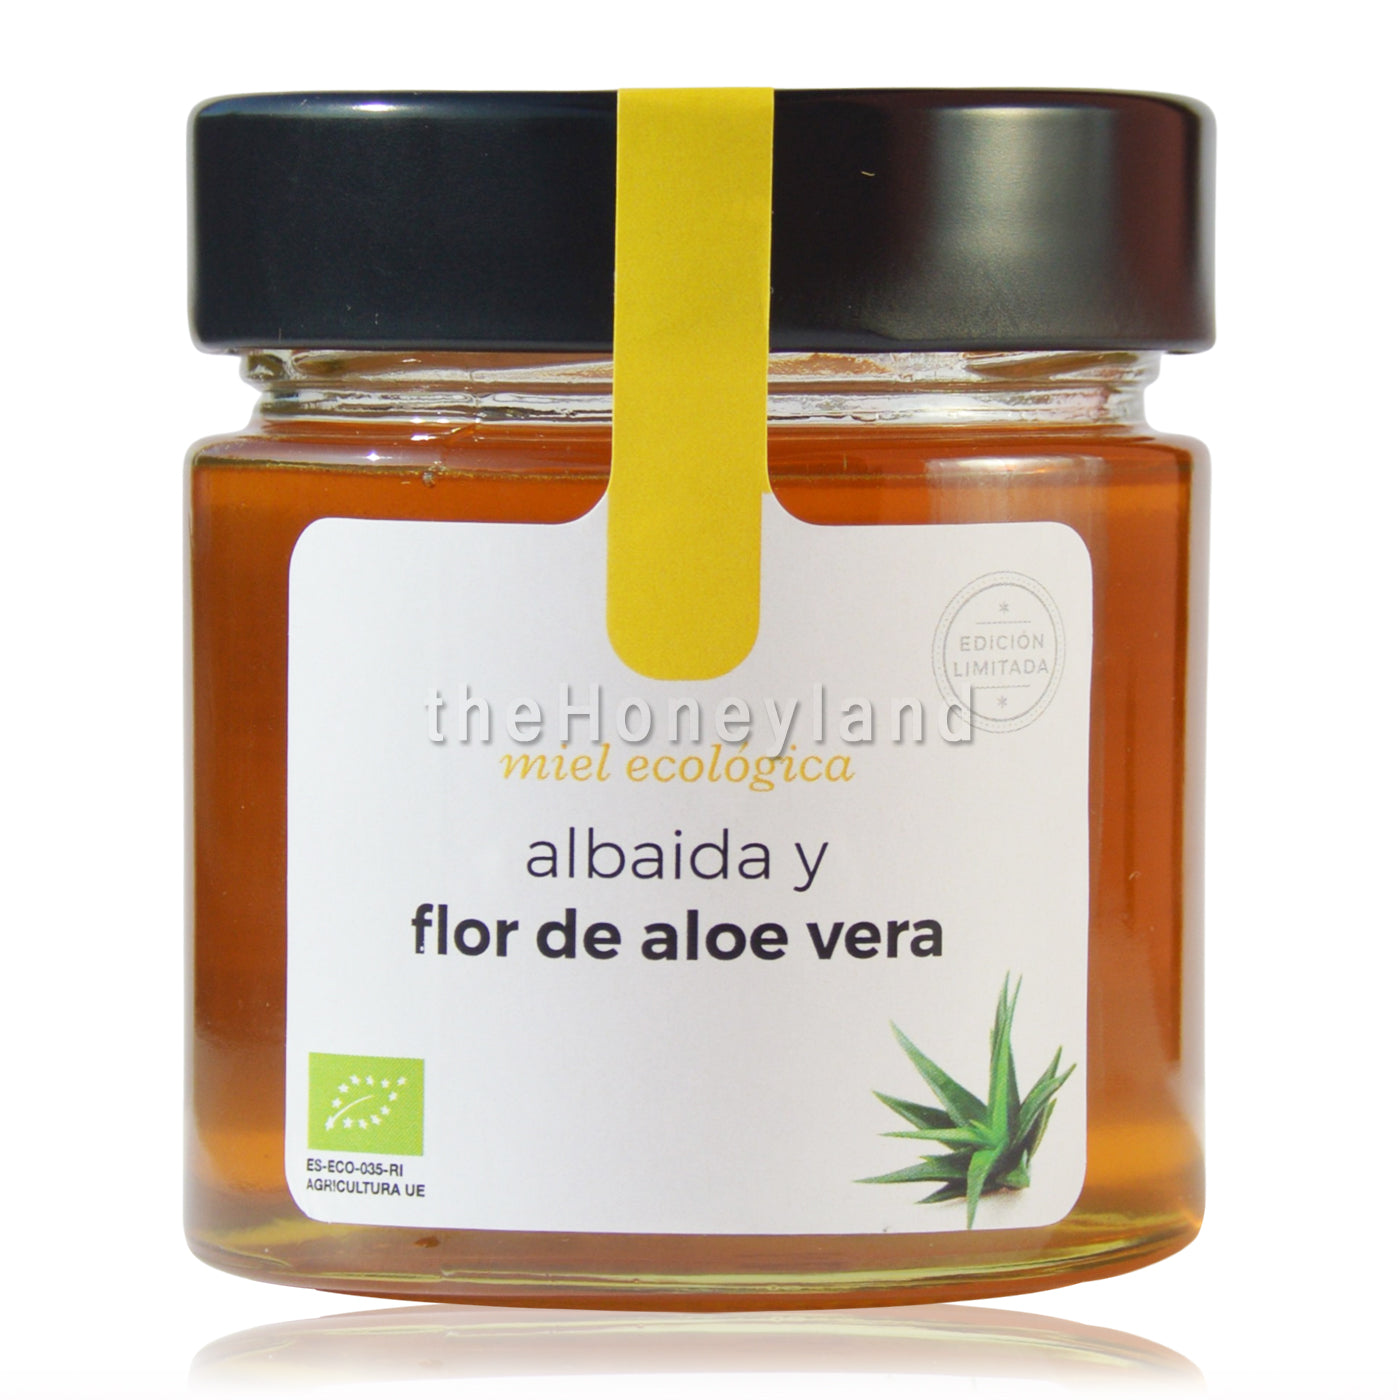 Organic albaida honey and aloe flowers